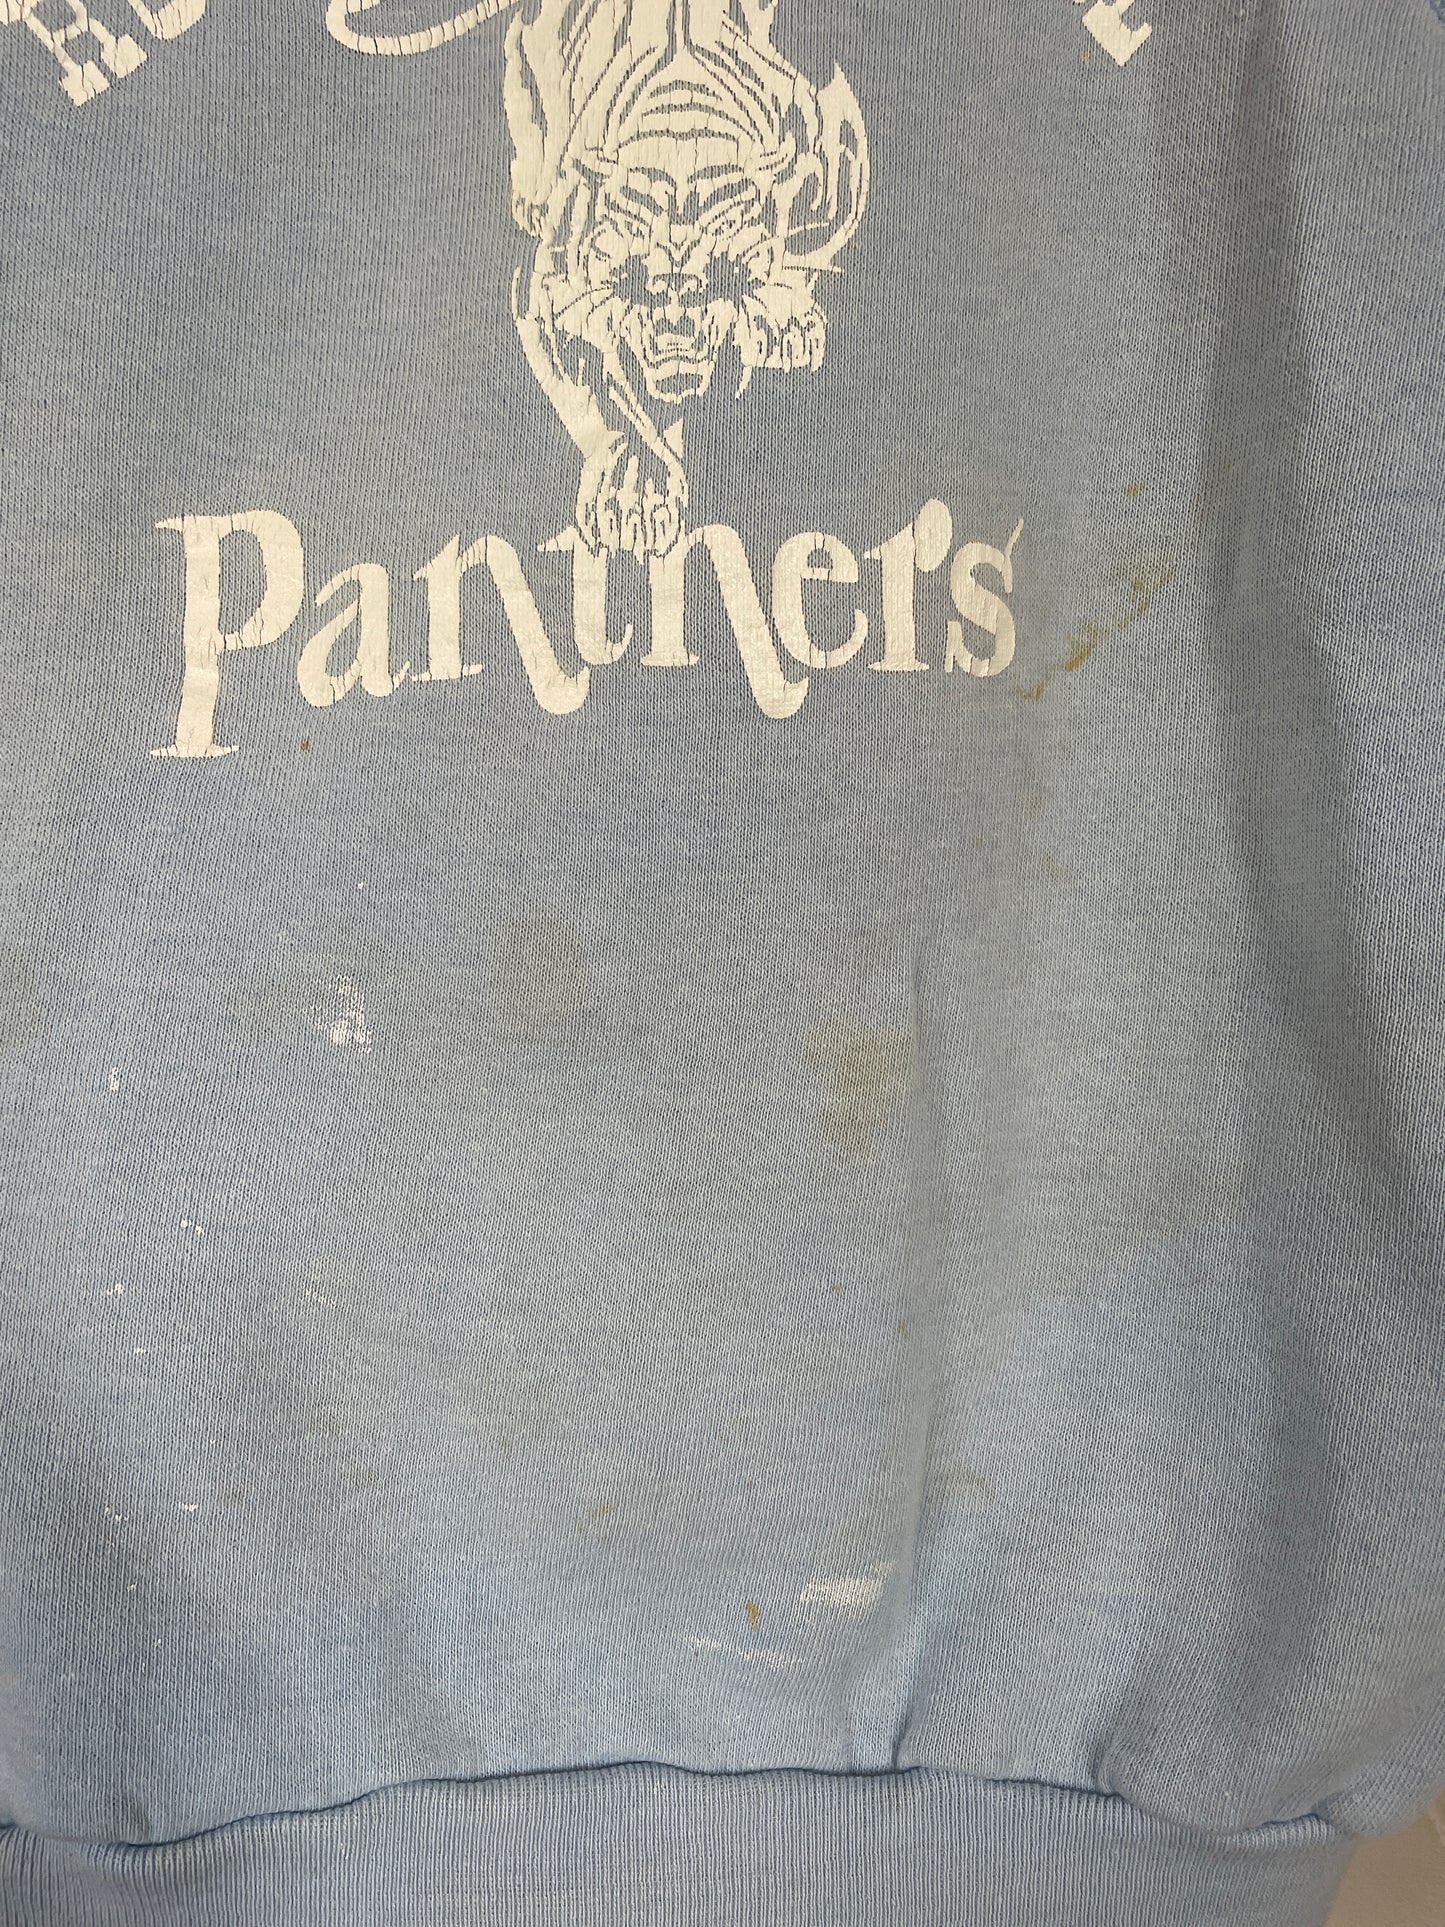 70s Roosevelt School Panthers Sweatshirt